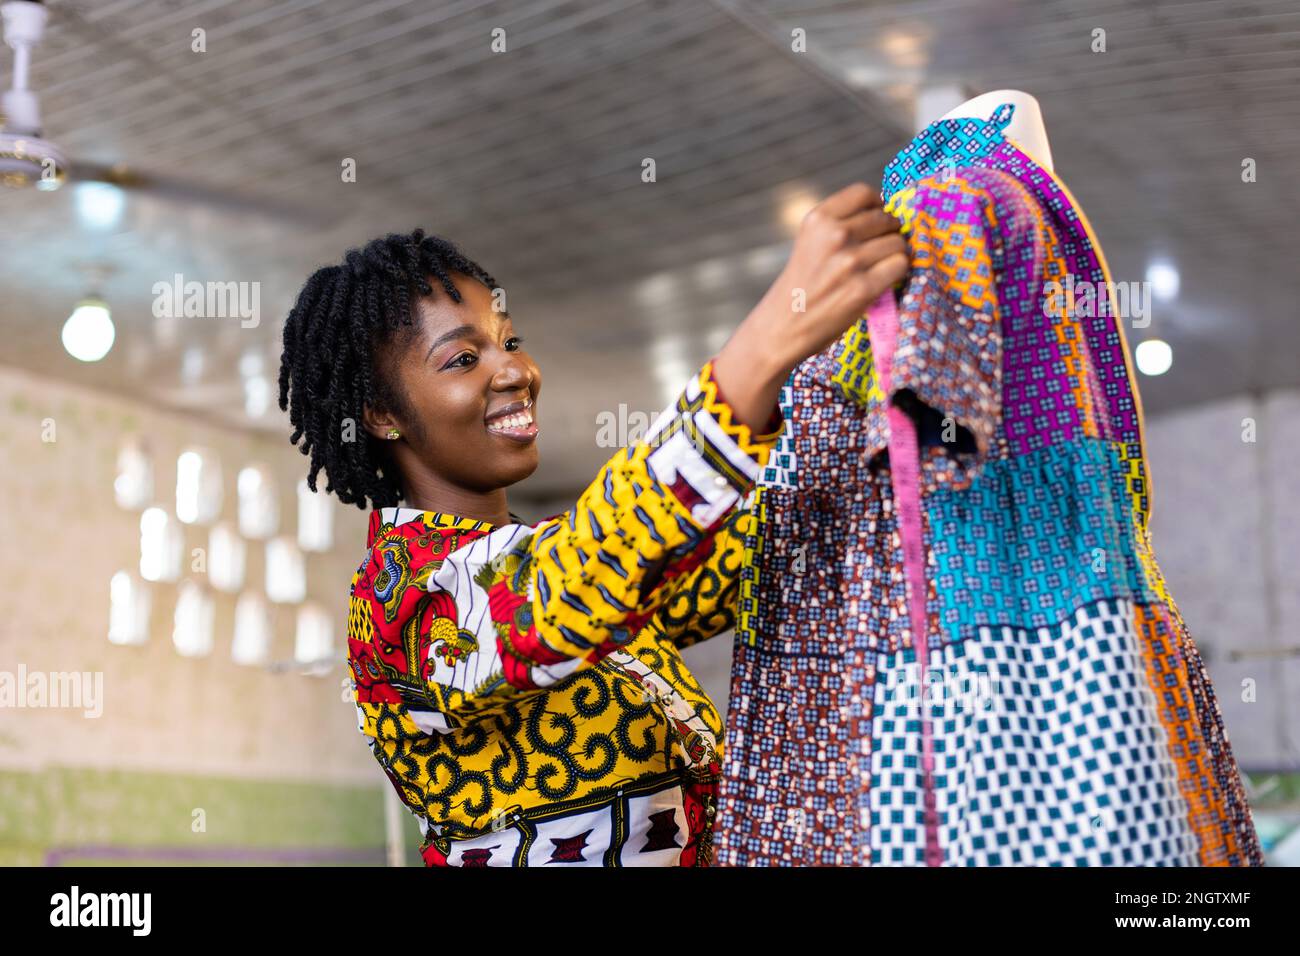 La couturière ouest-africaine souriante avec des cheveux locs mesure une partie d'une robe cousue accrochée à un mannequin dans son studio de design. Banque D'Images